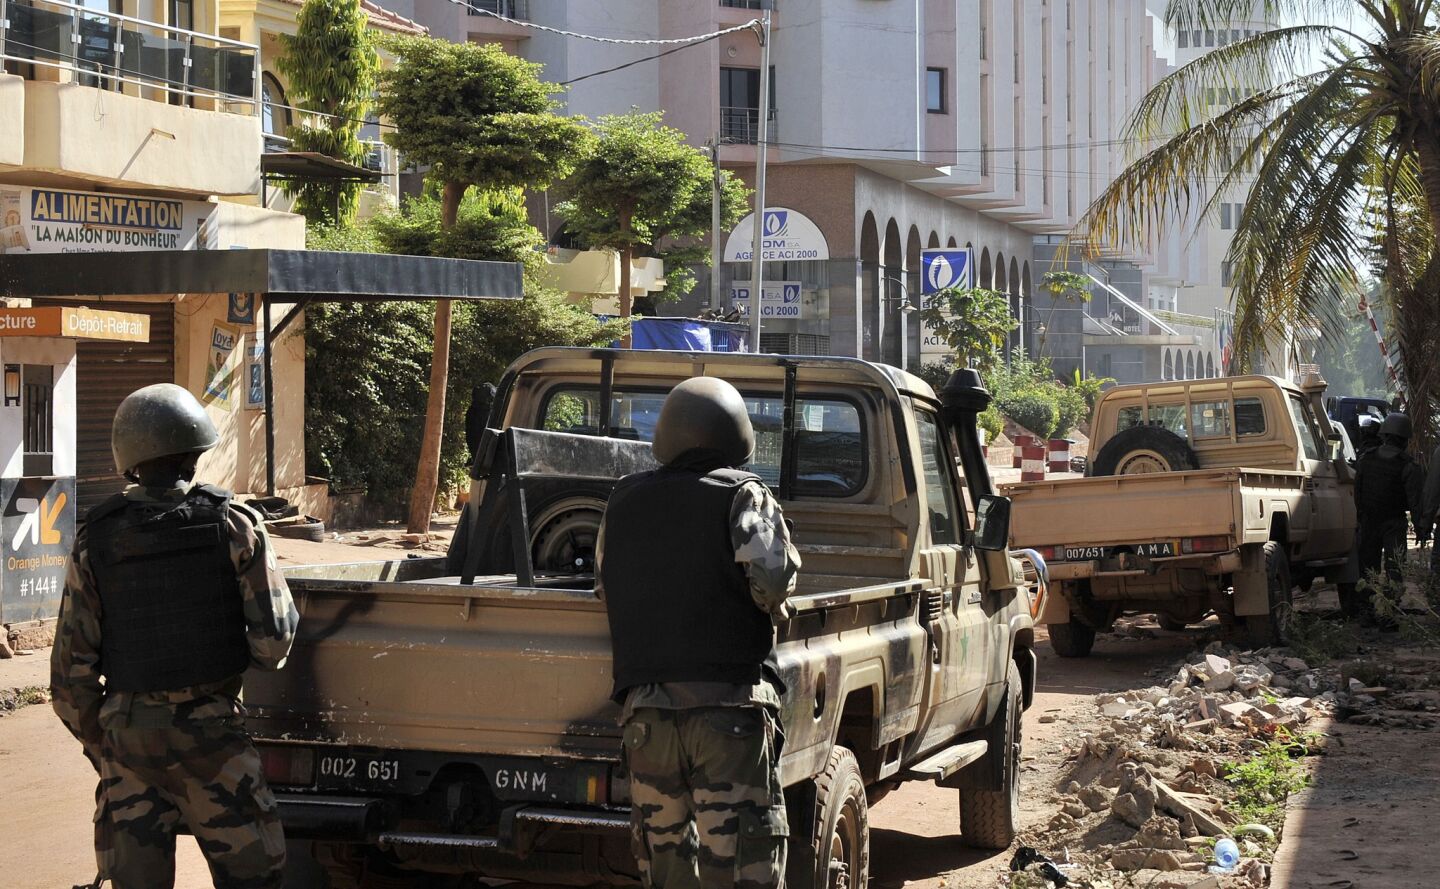 Malian troops take positions outside the Radisson Blu hotel in Bamako.